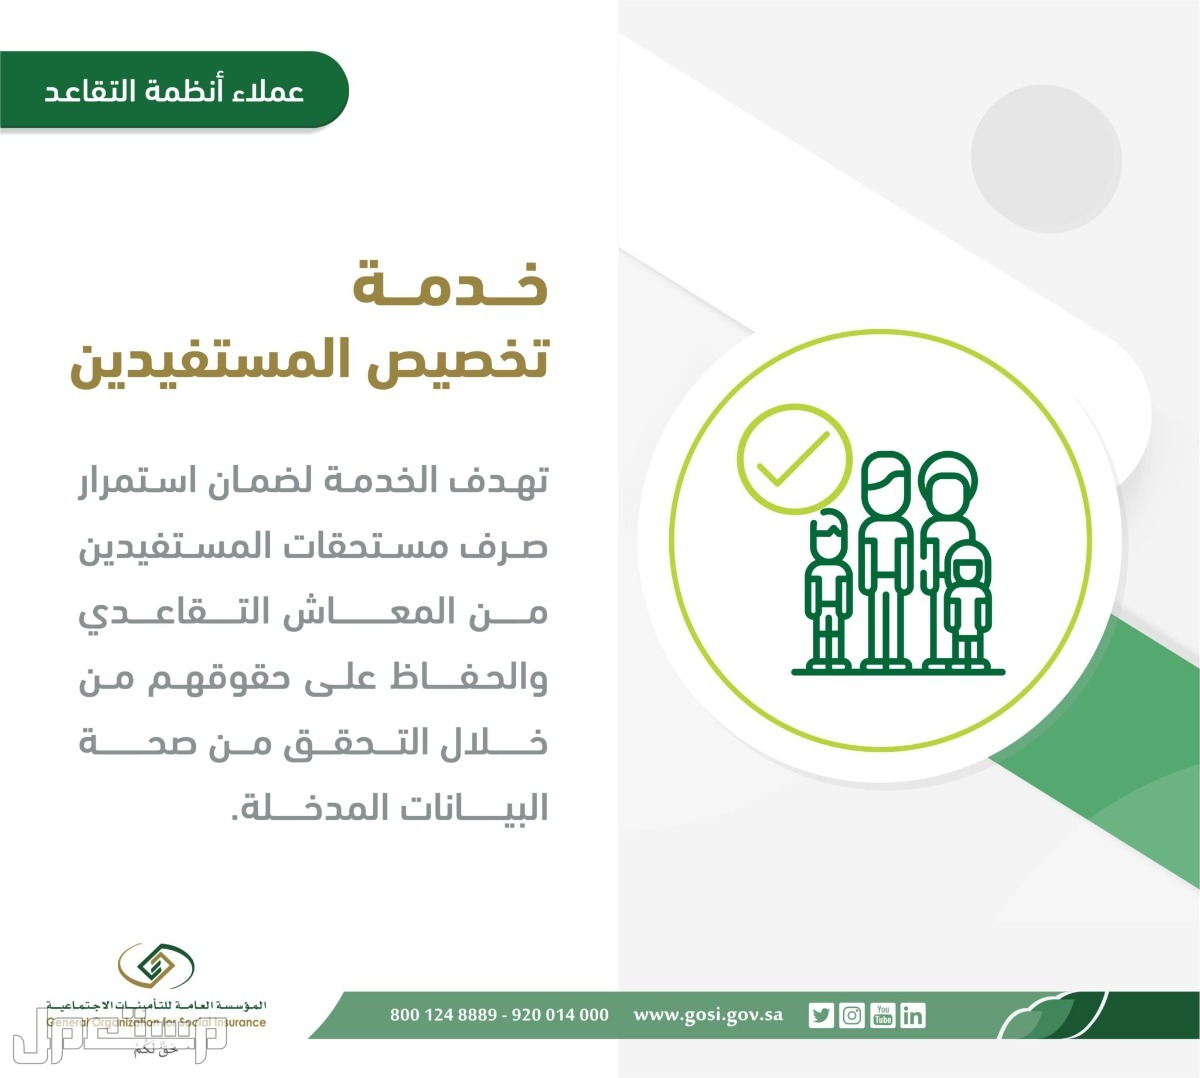 تعرف على خطوات تقديم طلب تخصيص المستفيدين المستحقين لتسوية المعاش في الأردن خدمة تخصيص المستفيدين